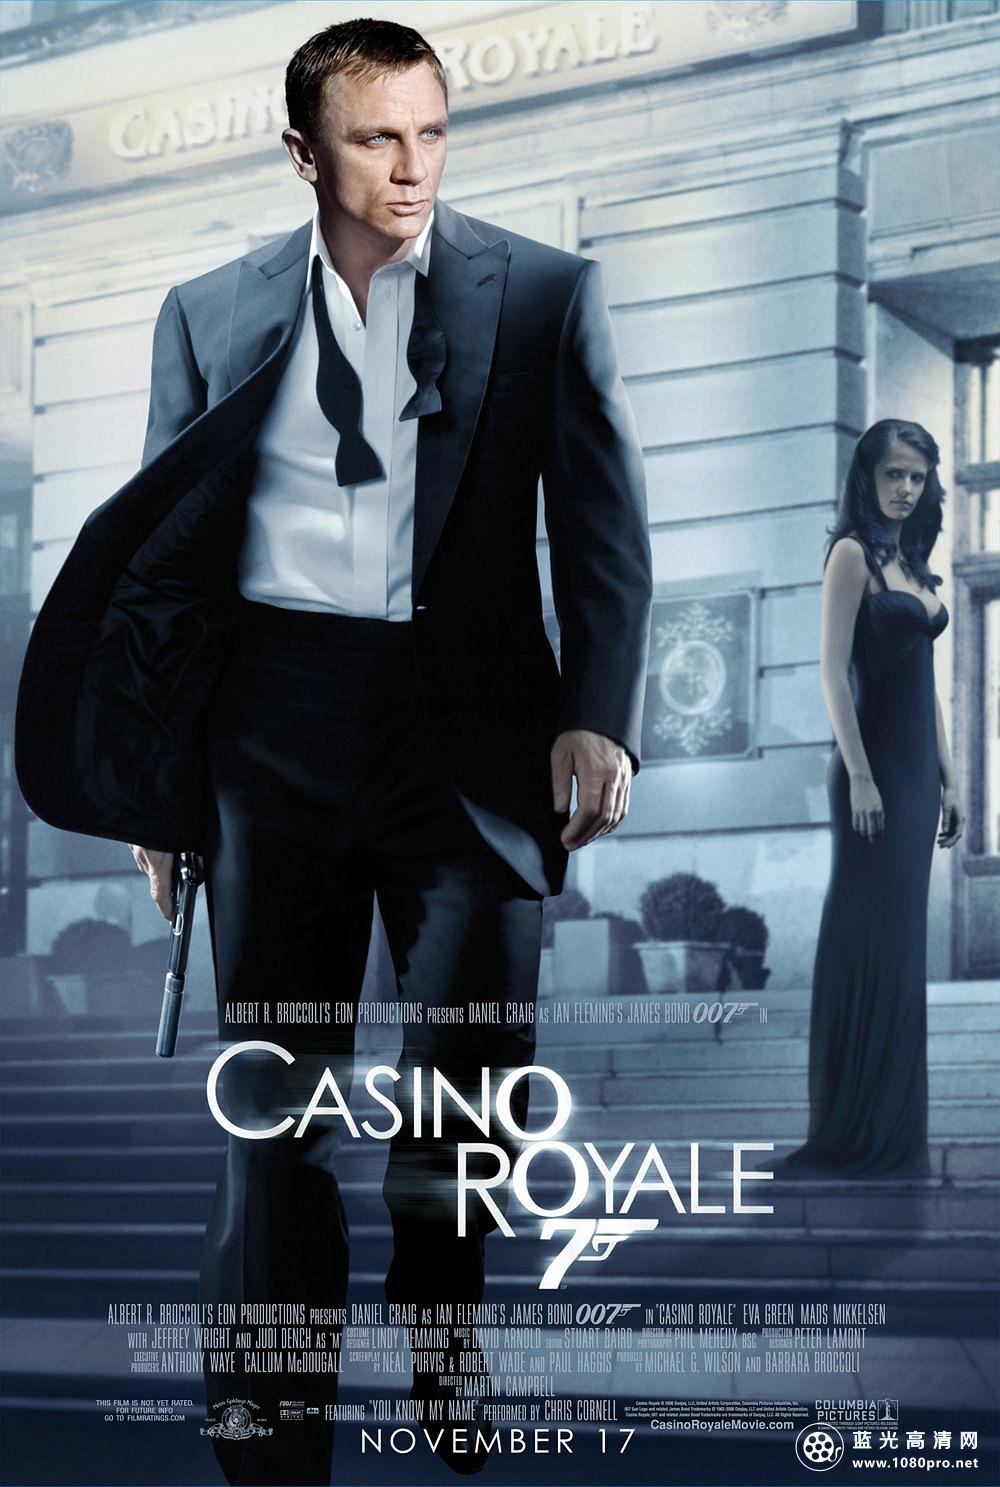 007:大战皇家赌场/007大战皇家赌场 Casino.Royale.2006.1080p.BluRay.x264.DTS-CtrlHD 17.04GB-1.png